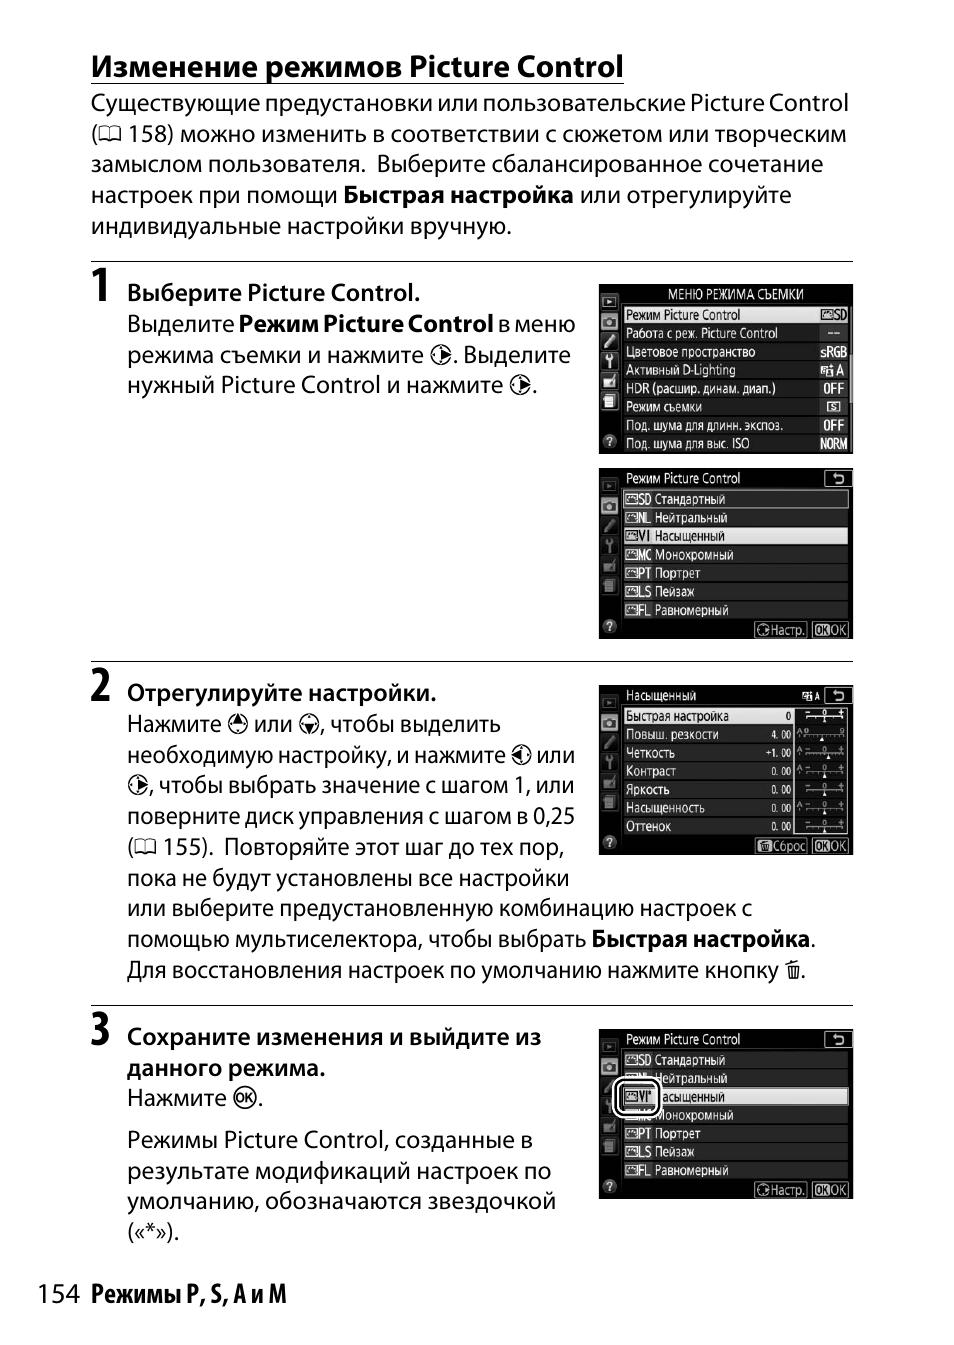 Изменение режимов picture control | Инструкция по эксплуатации Nikon D5500 | Страница 178 / 436